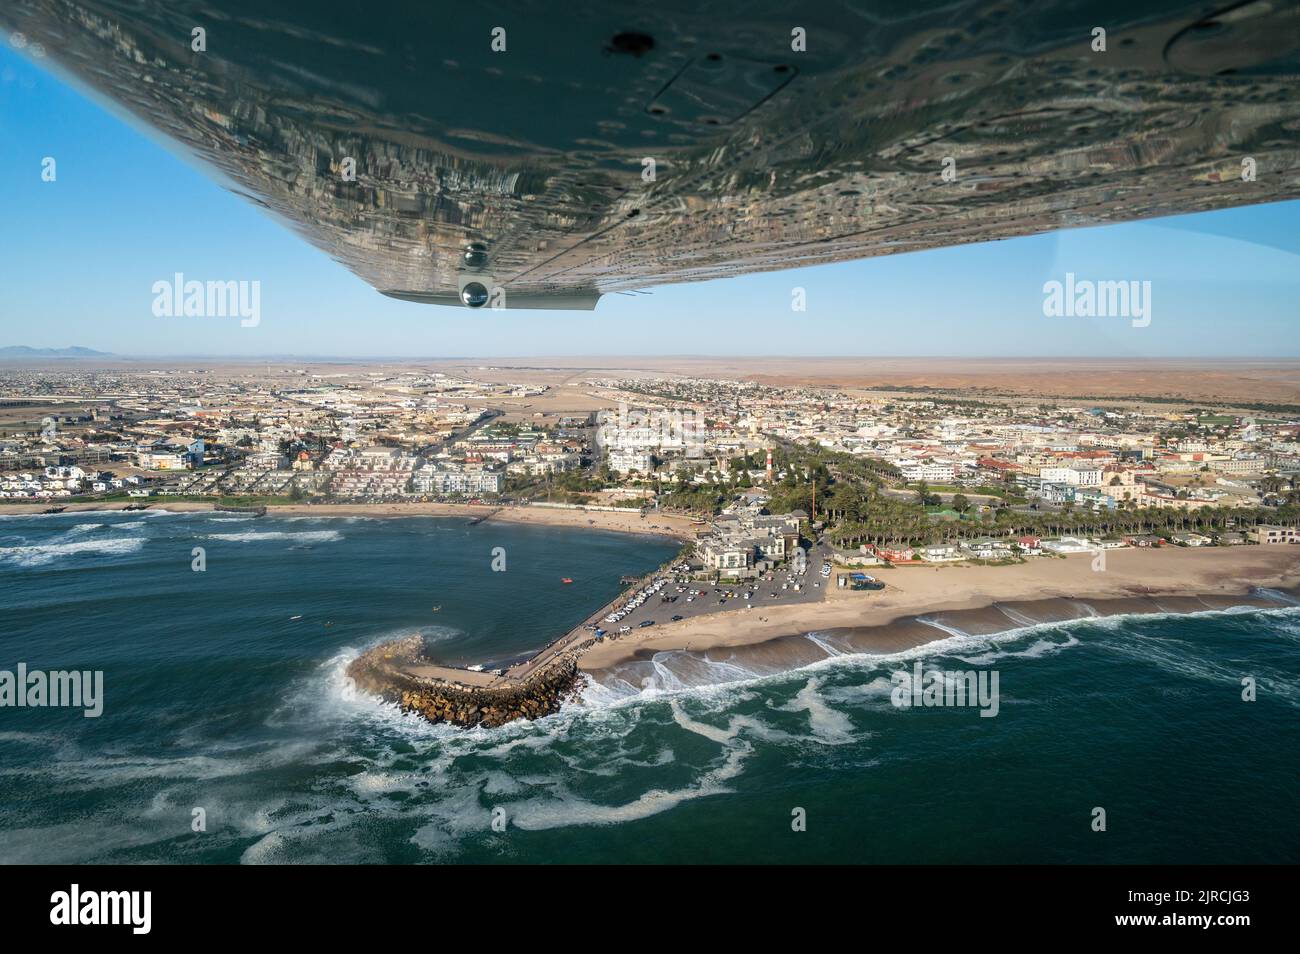 Luftaufnahme der Küste in Namibia und historischen Bezirken der Stadt Swakopmund in der Namib Wüste, Atlantik, Afrika Stockfoto